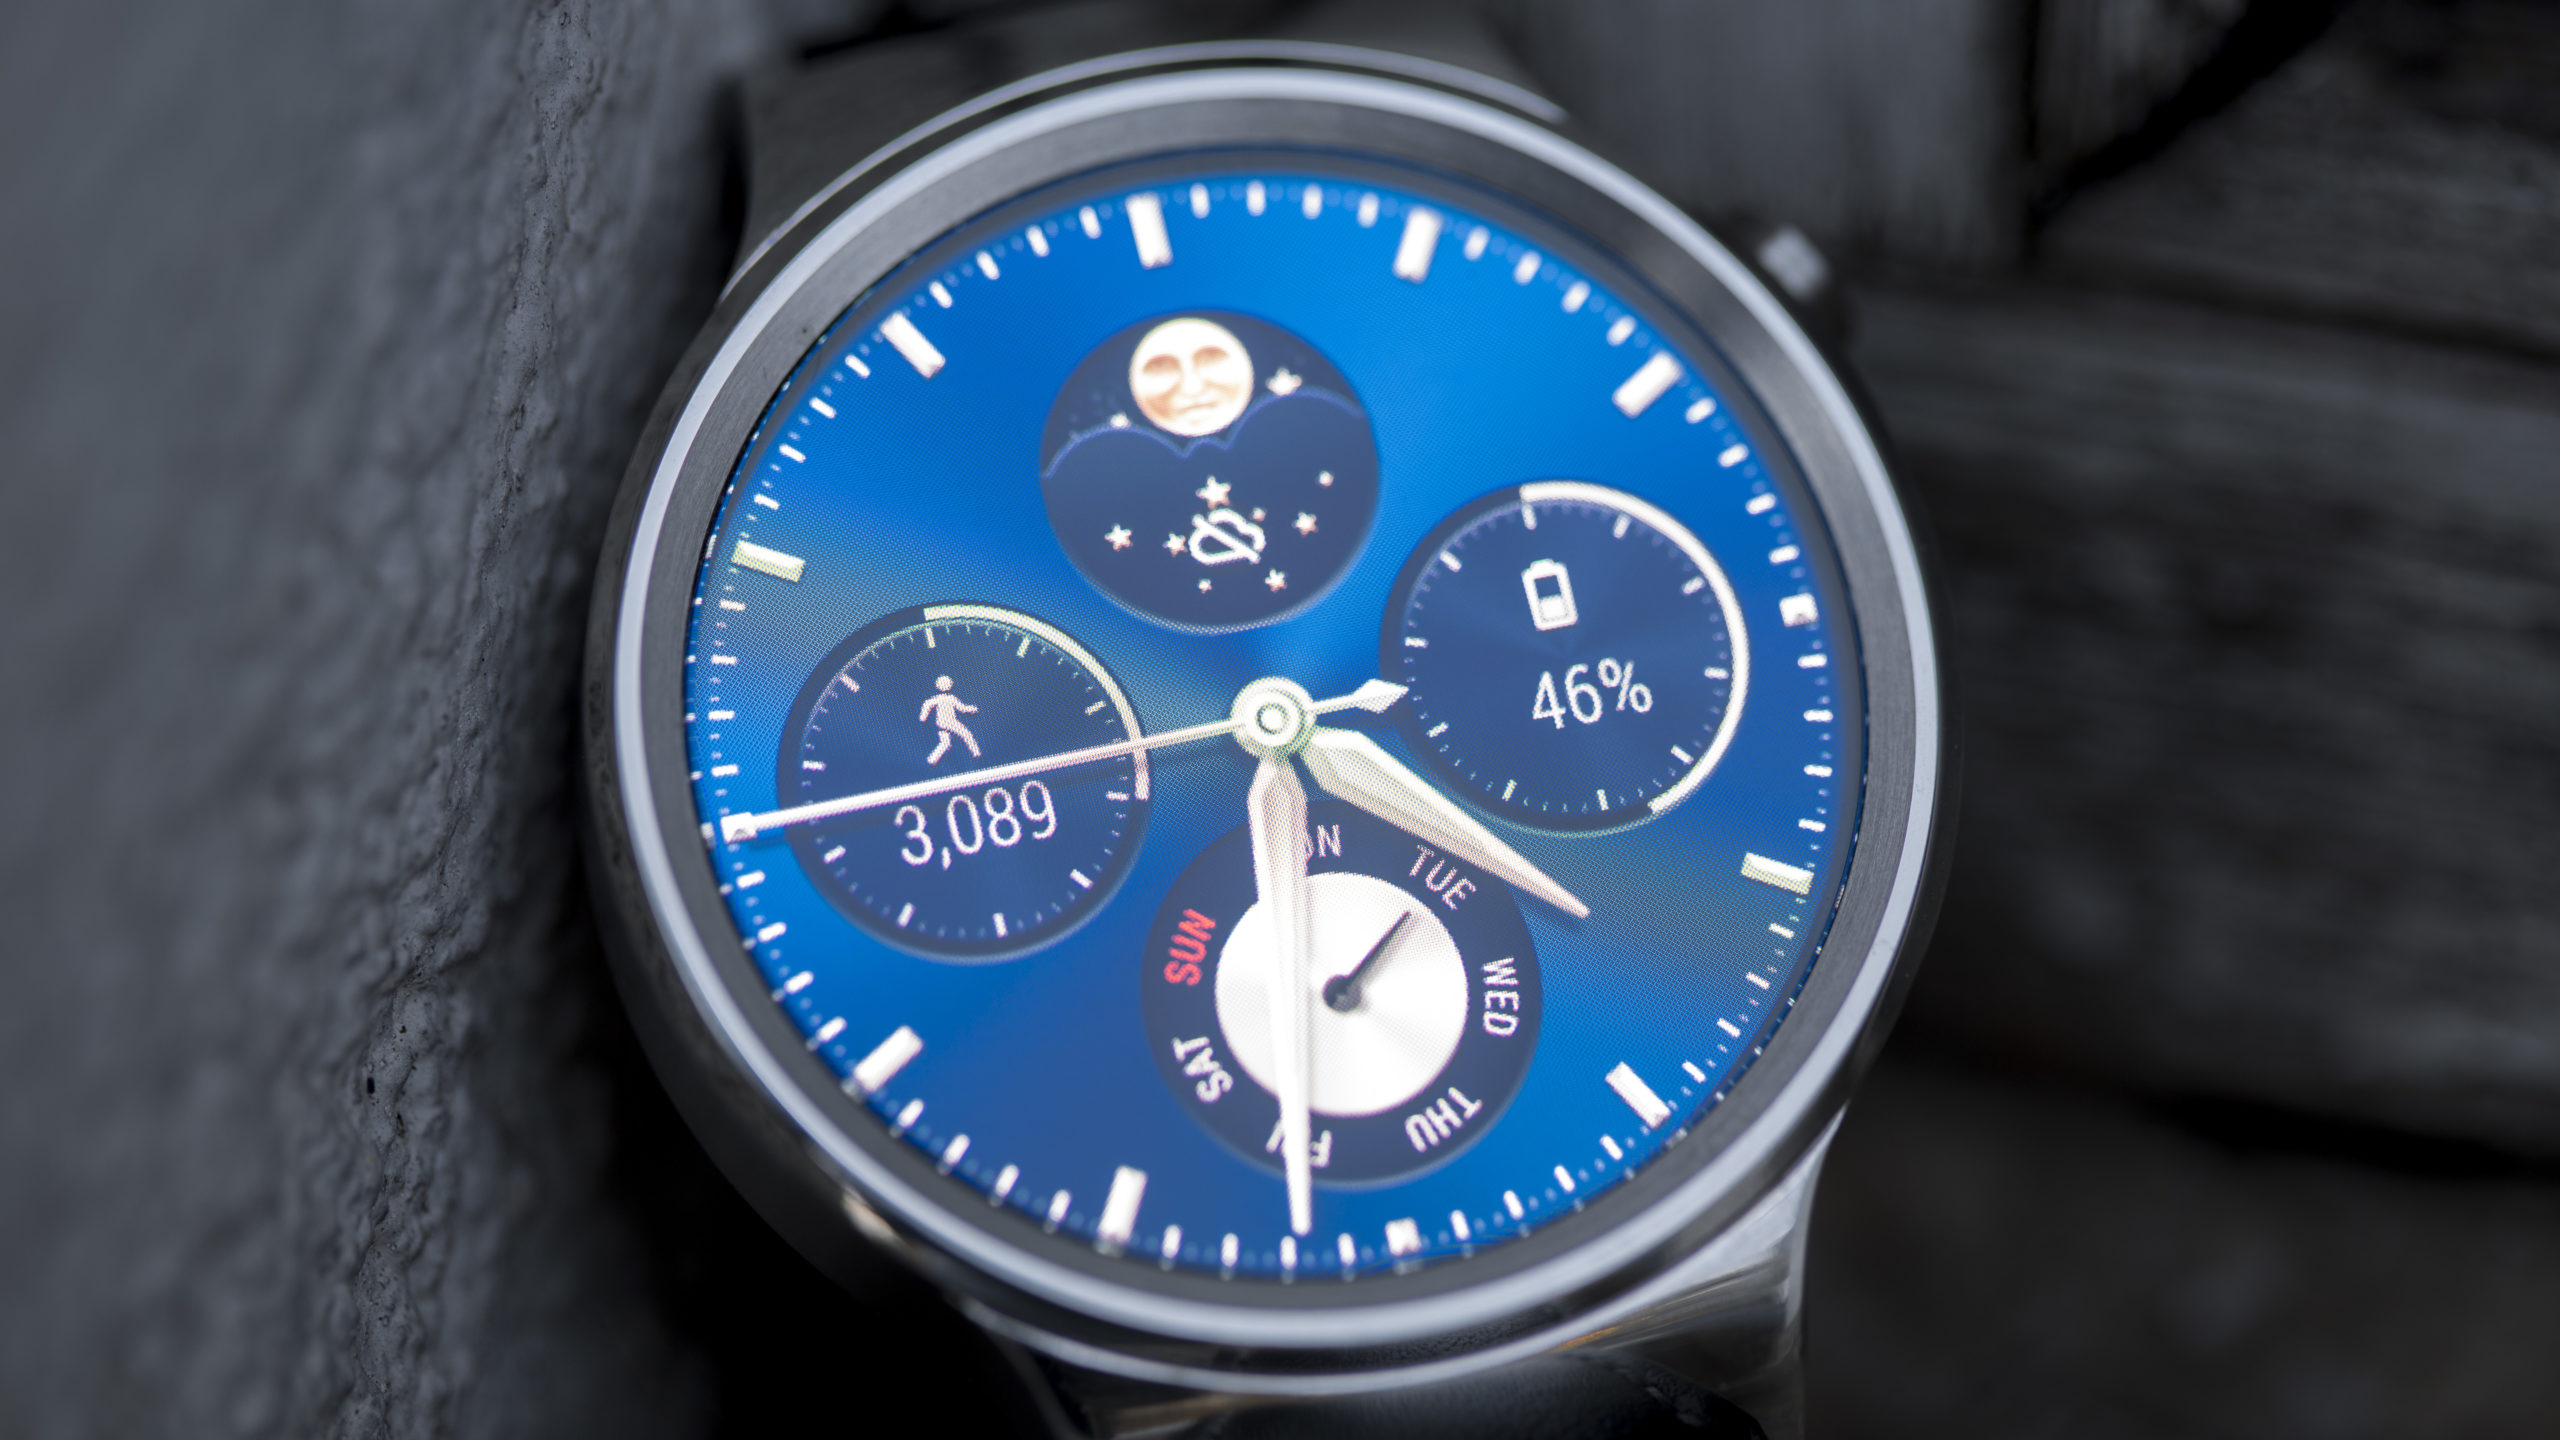 Recenze Huawei Watch: Originální chytré hodinky Huawei jsou stále dobrým nákupem